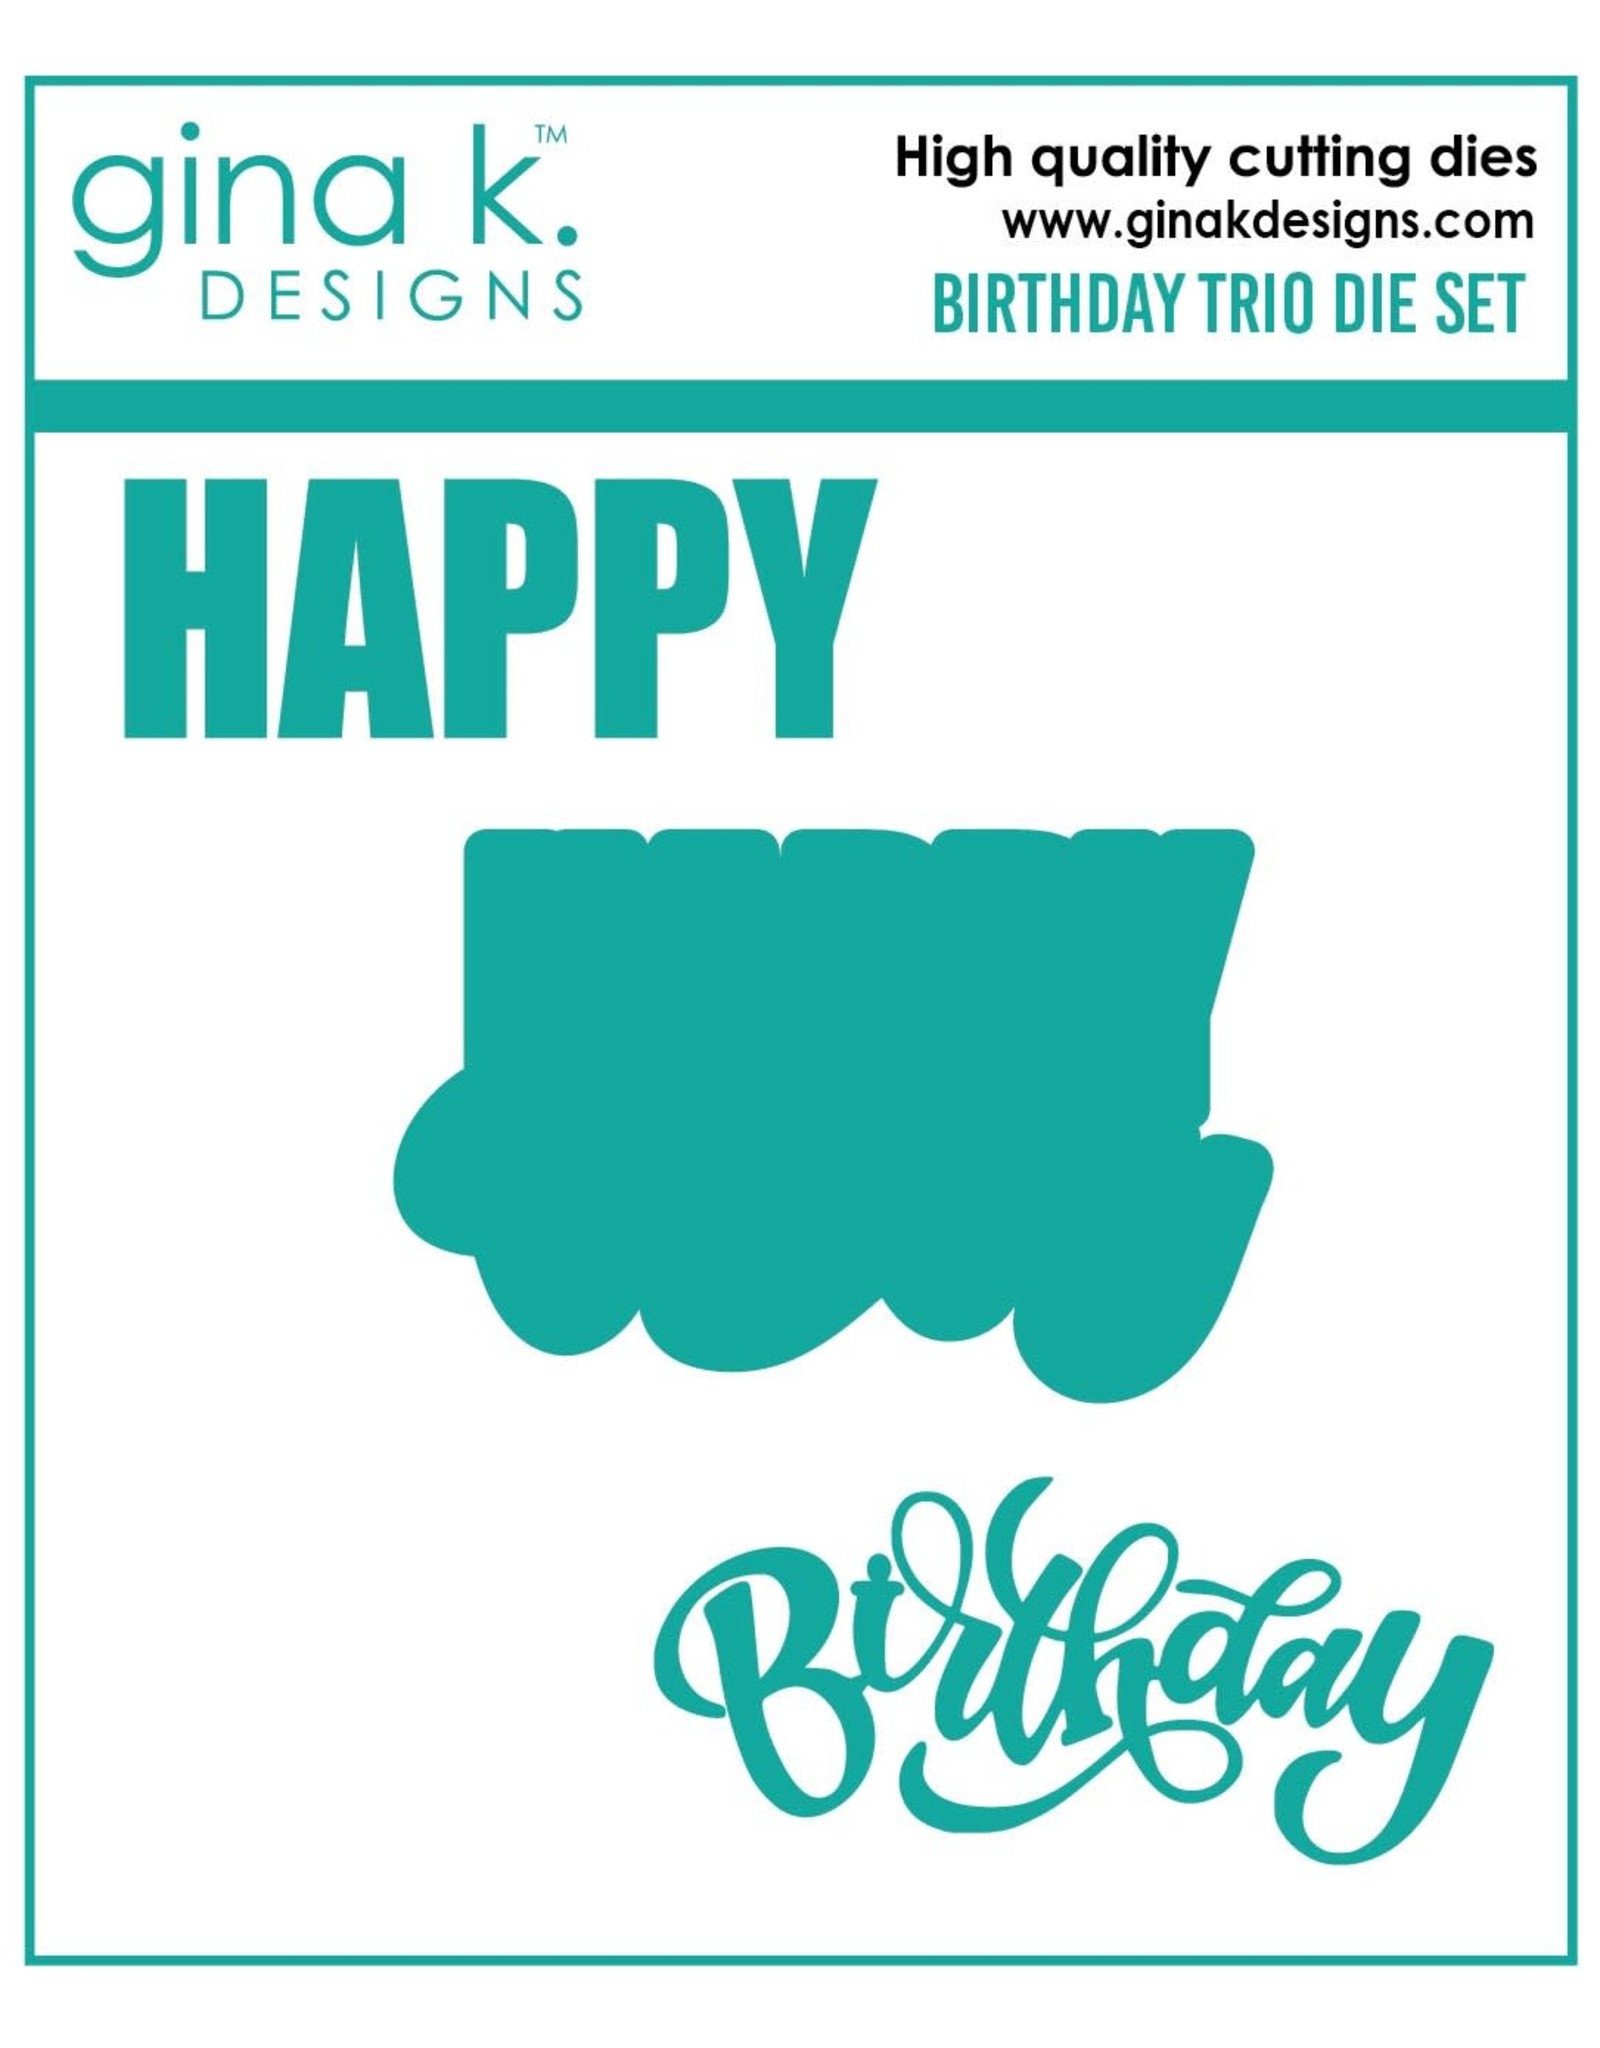 Gina K. Designs Birthday Trio Die